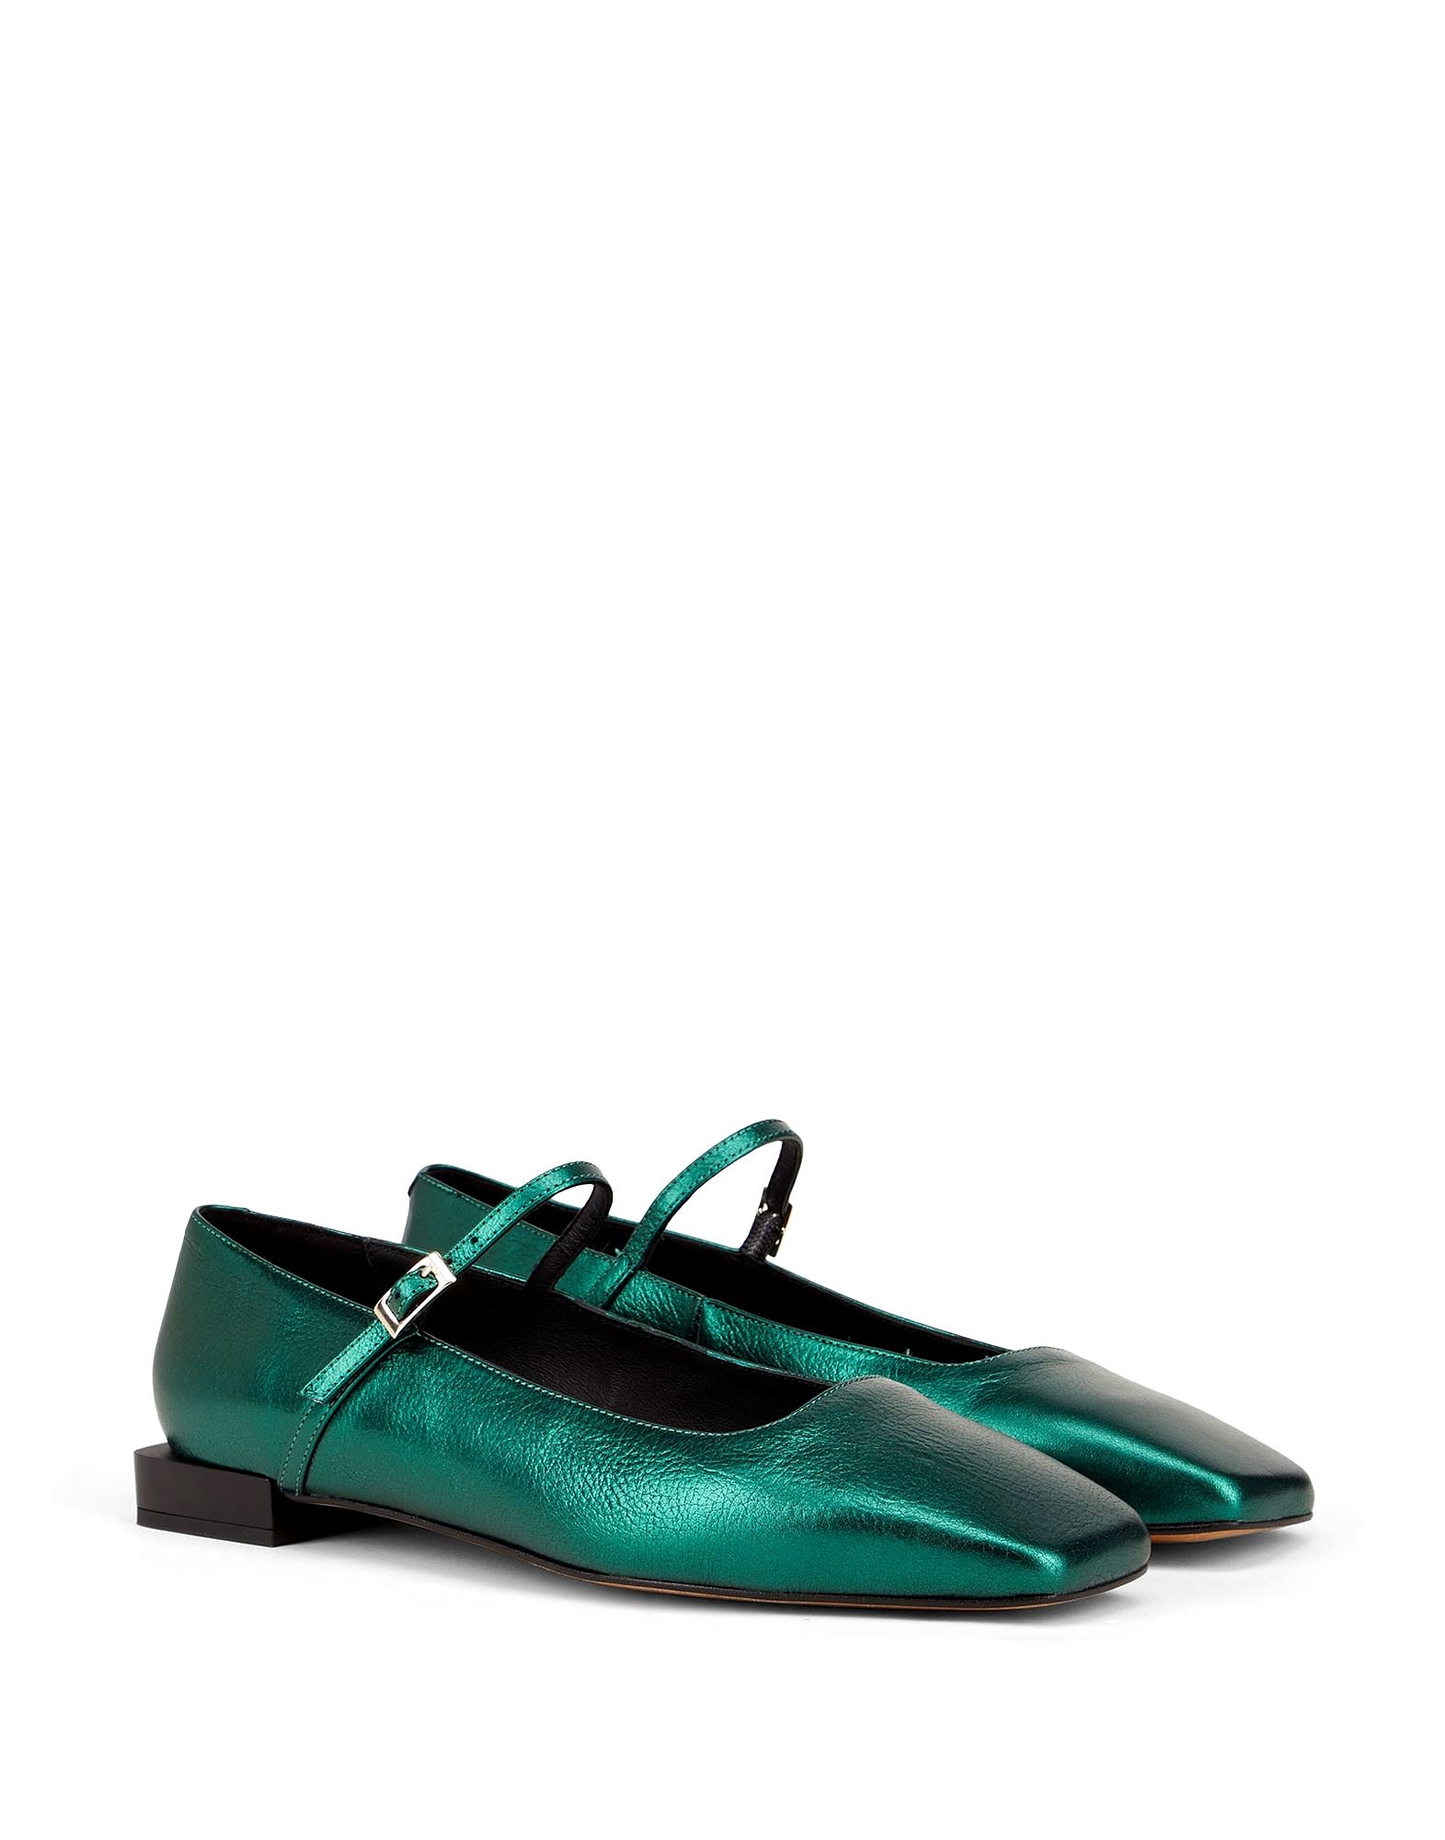 Parioli Ballerina Shoes - Green